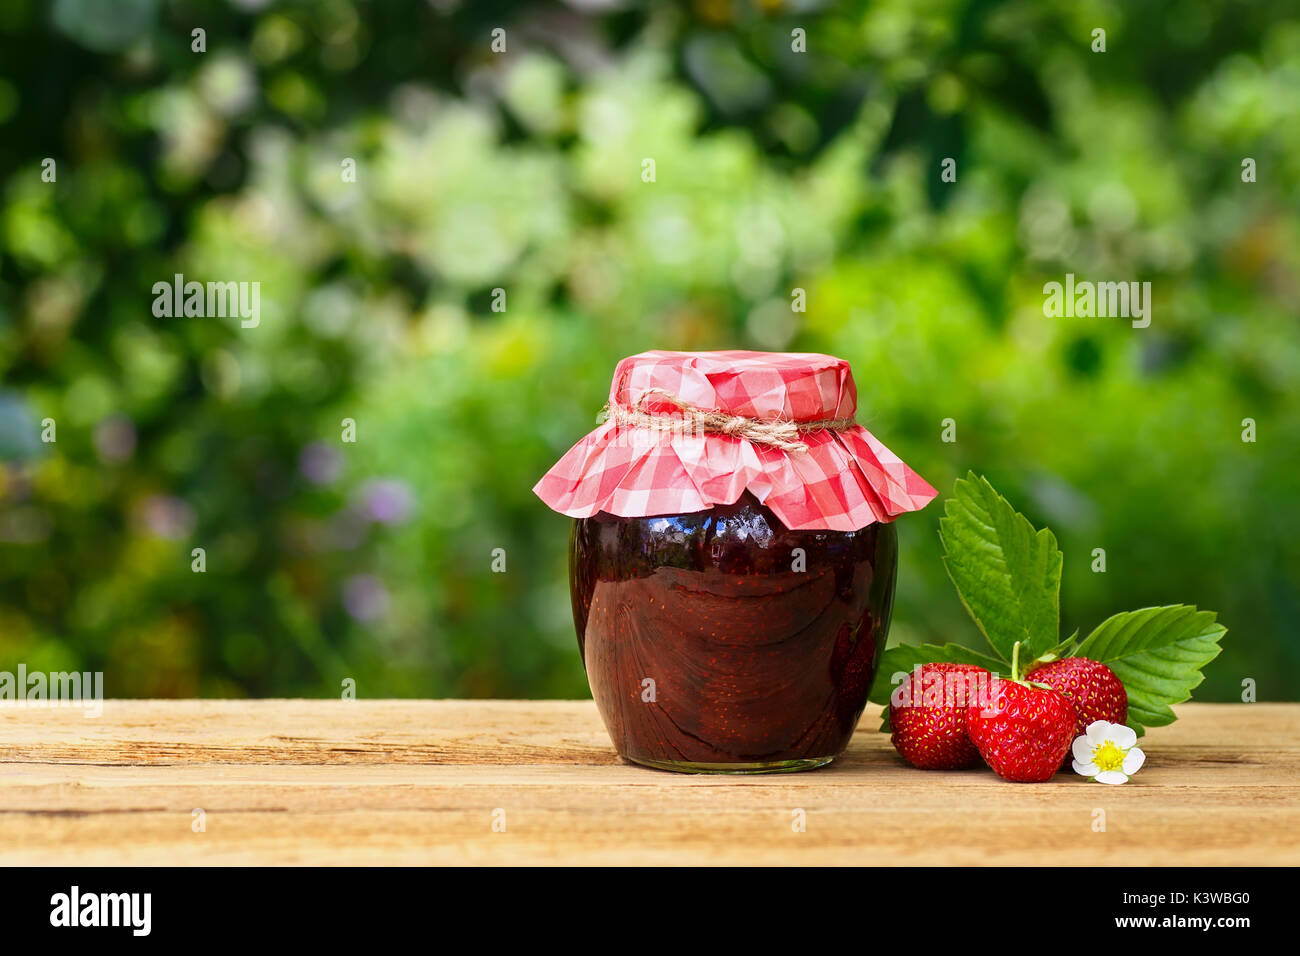 La confiture de fraise dans le bocal sur la table Banque D'Images